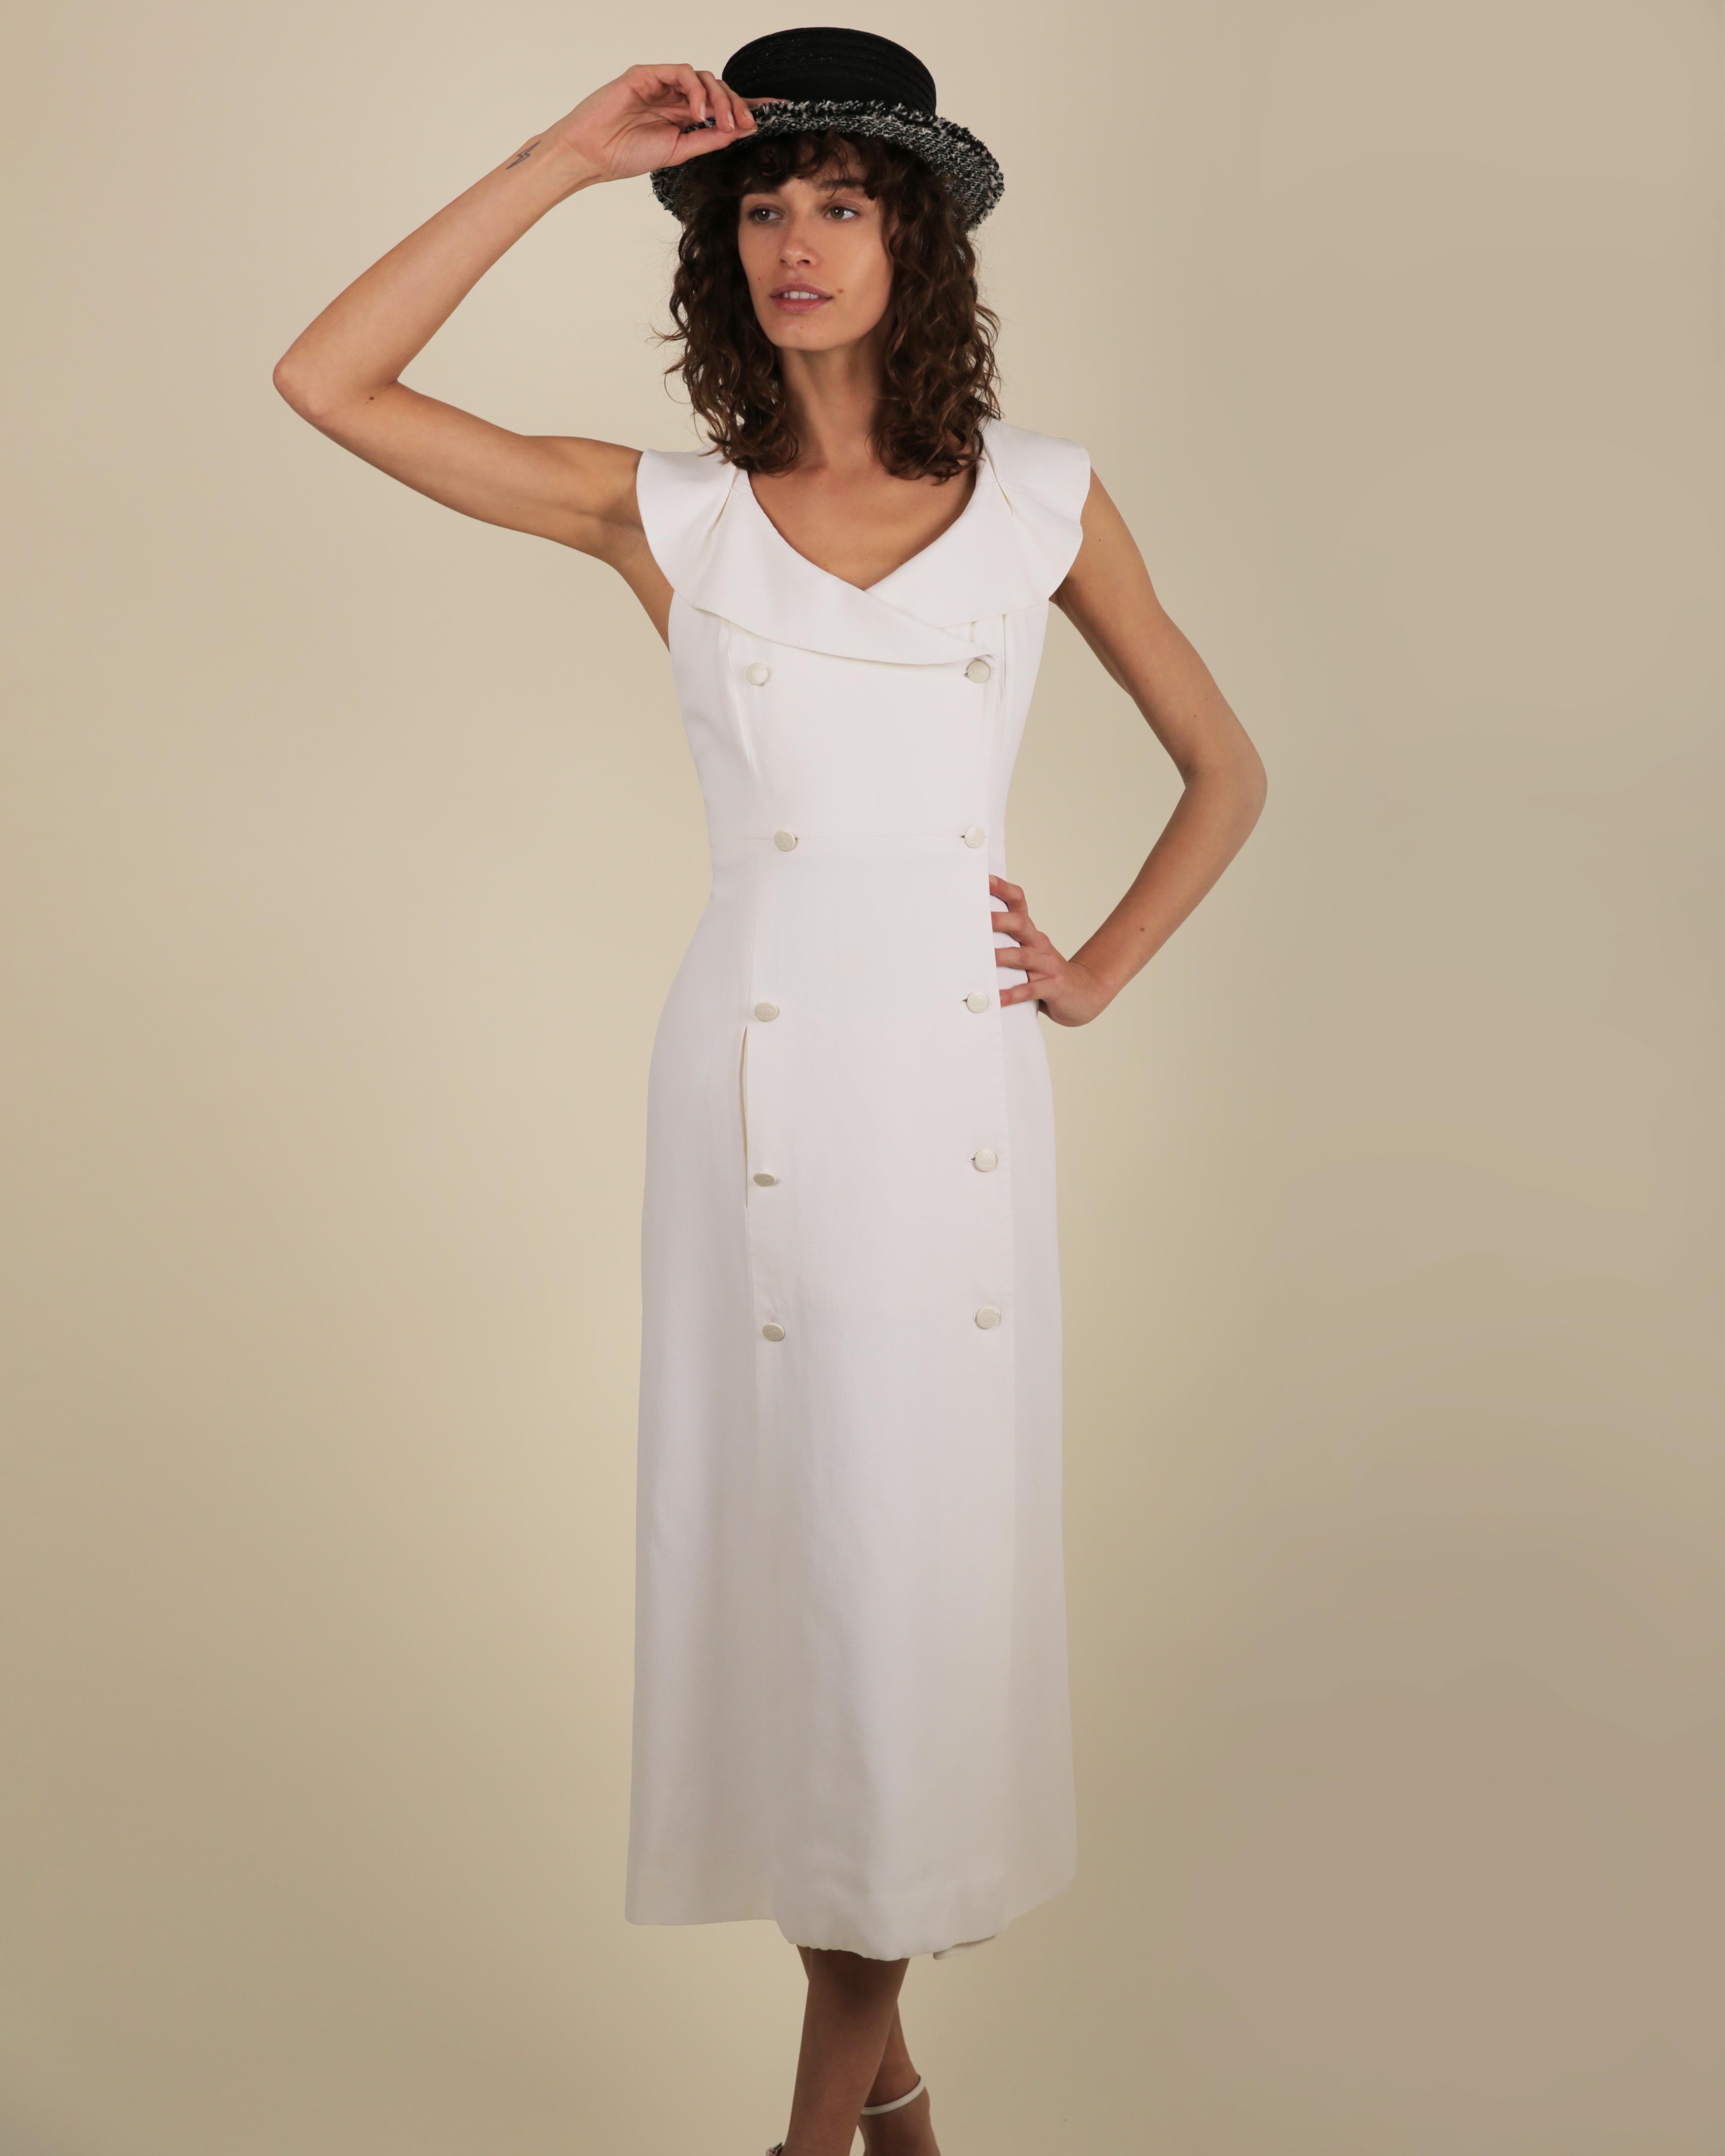 LOVE LALI Vintage By

Ein wunderschönes Vintage-Kleid mit Knopfleiste von Chanel Cruise 1997 von Karl Lagerfeld
Weißes Kleid mit einer sehr feinen Waffel/Webstruktur, die über das Kleid läuft
Das Kleid lässt sich vorne mit weißen Knöpfen mit